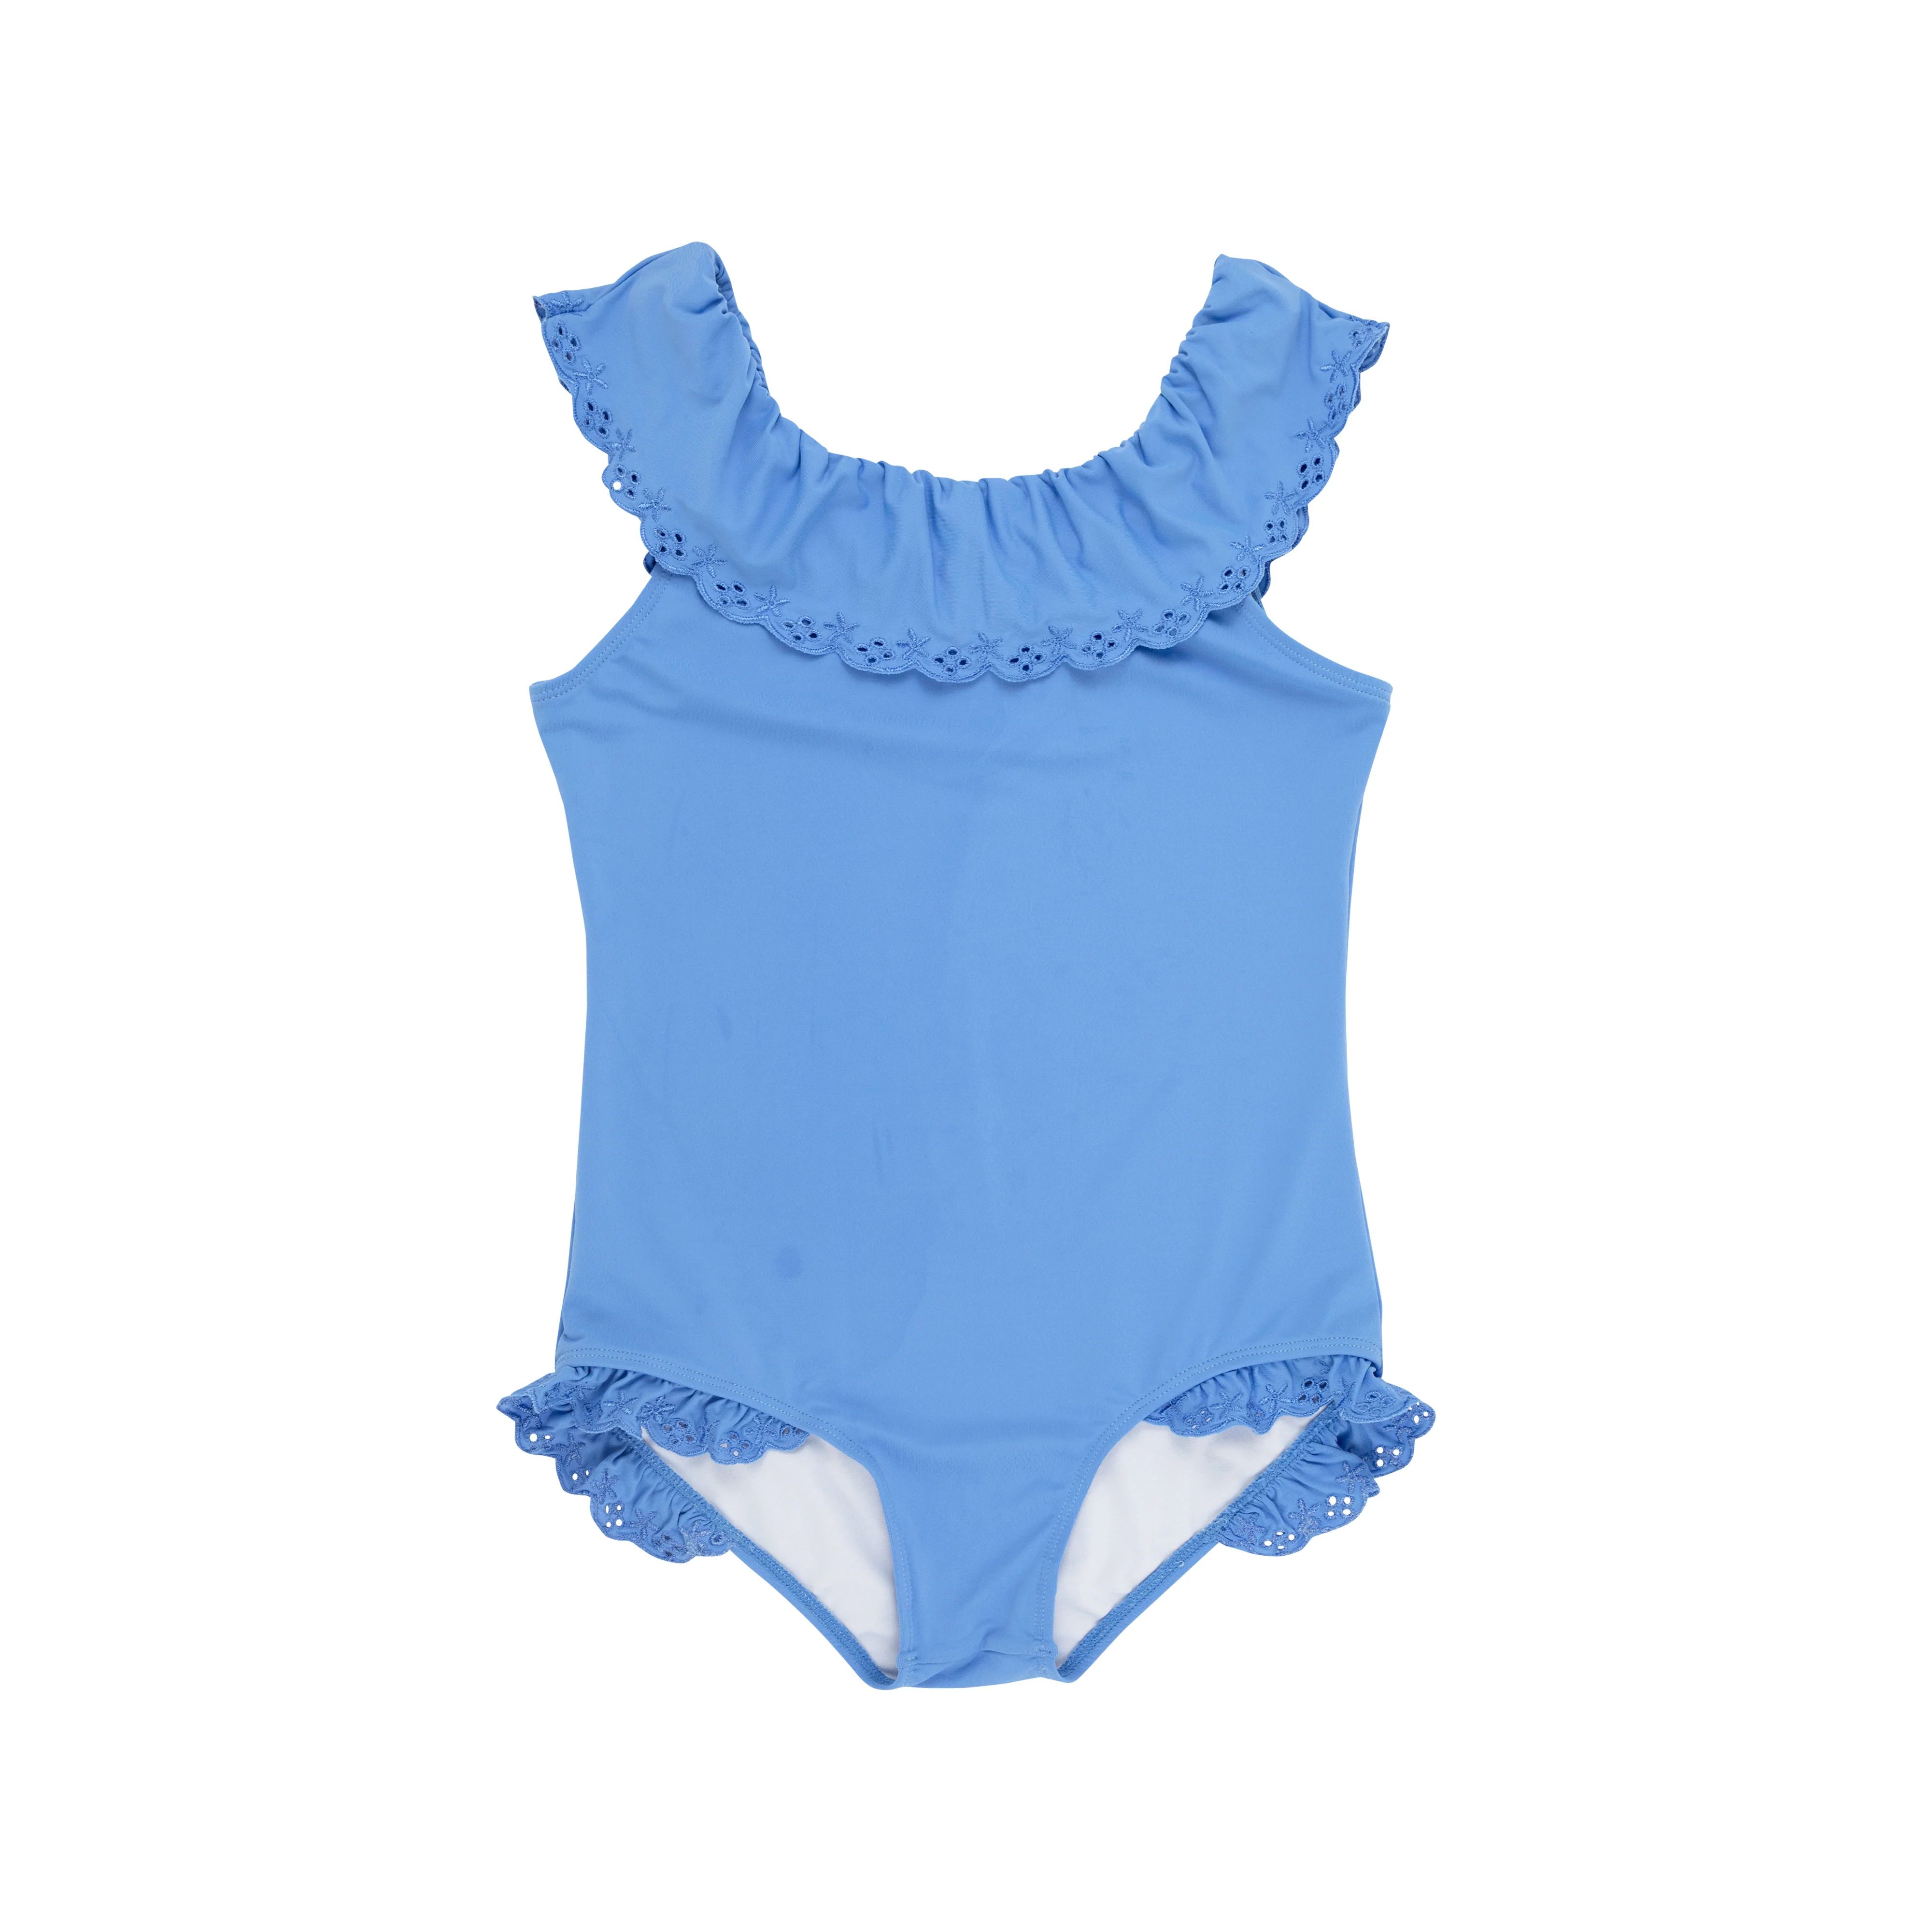 Sandy Lane Swimsuit - Barbados Blue | The Beaufort Bonnet Company